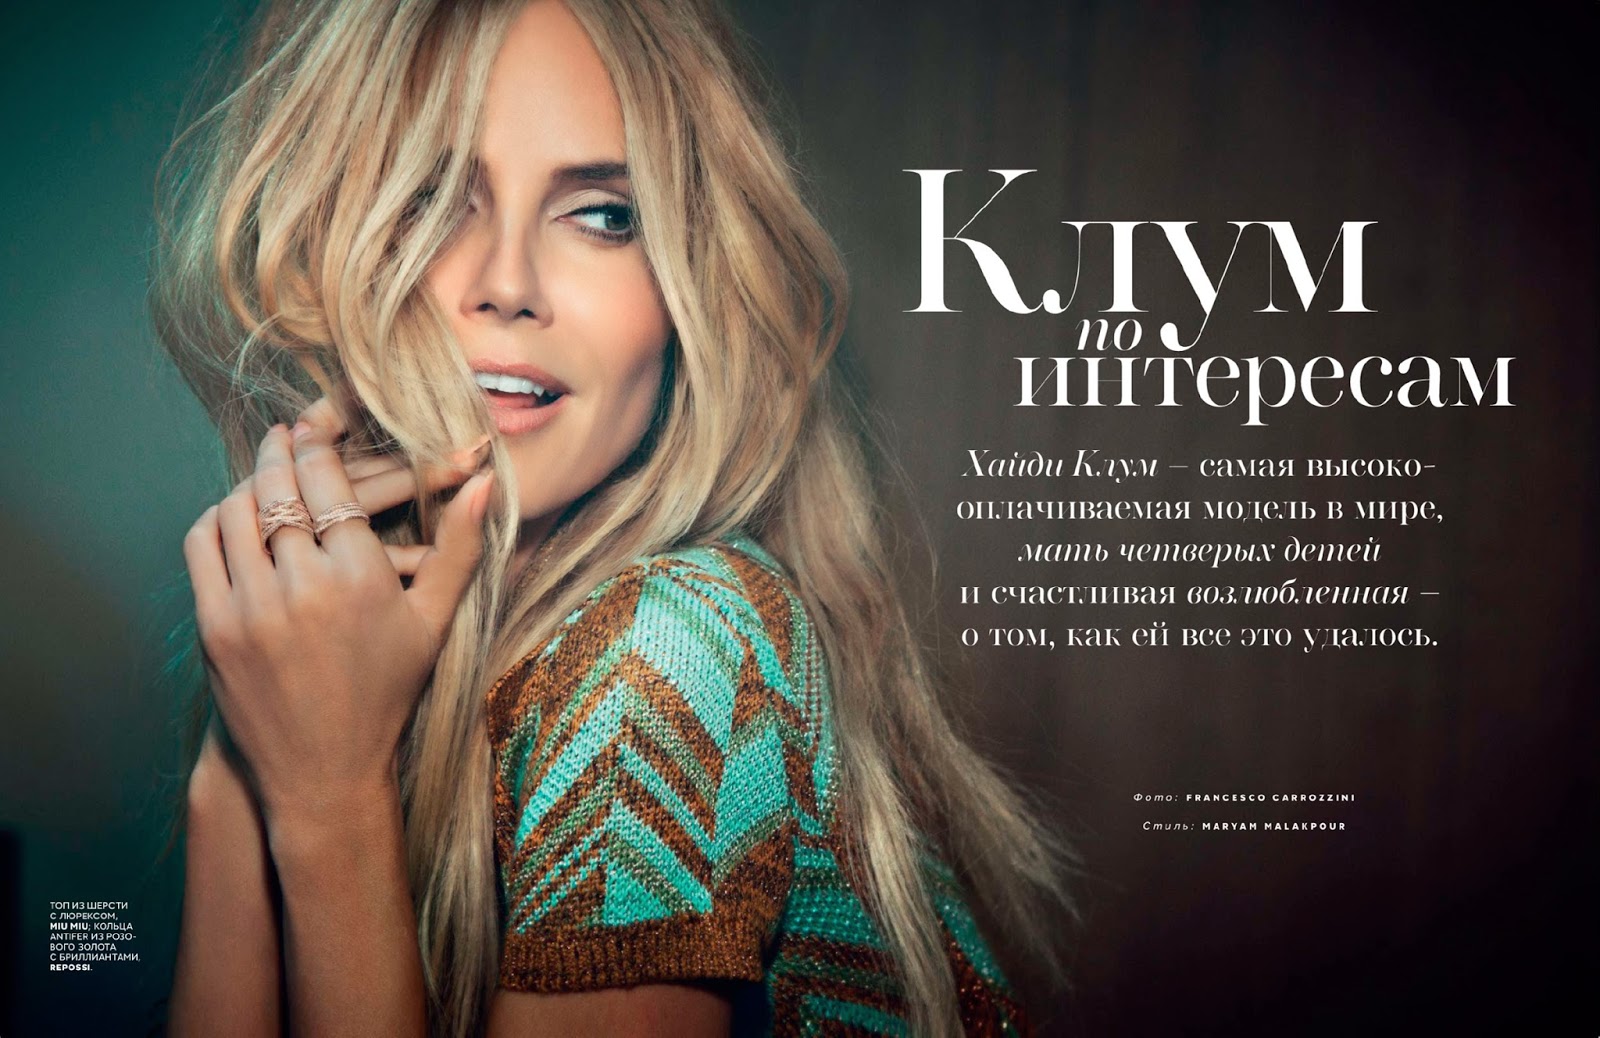 صور هايدي كلوم على غلاف مجلة فوغ روسيا أكتوبر 2014